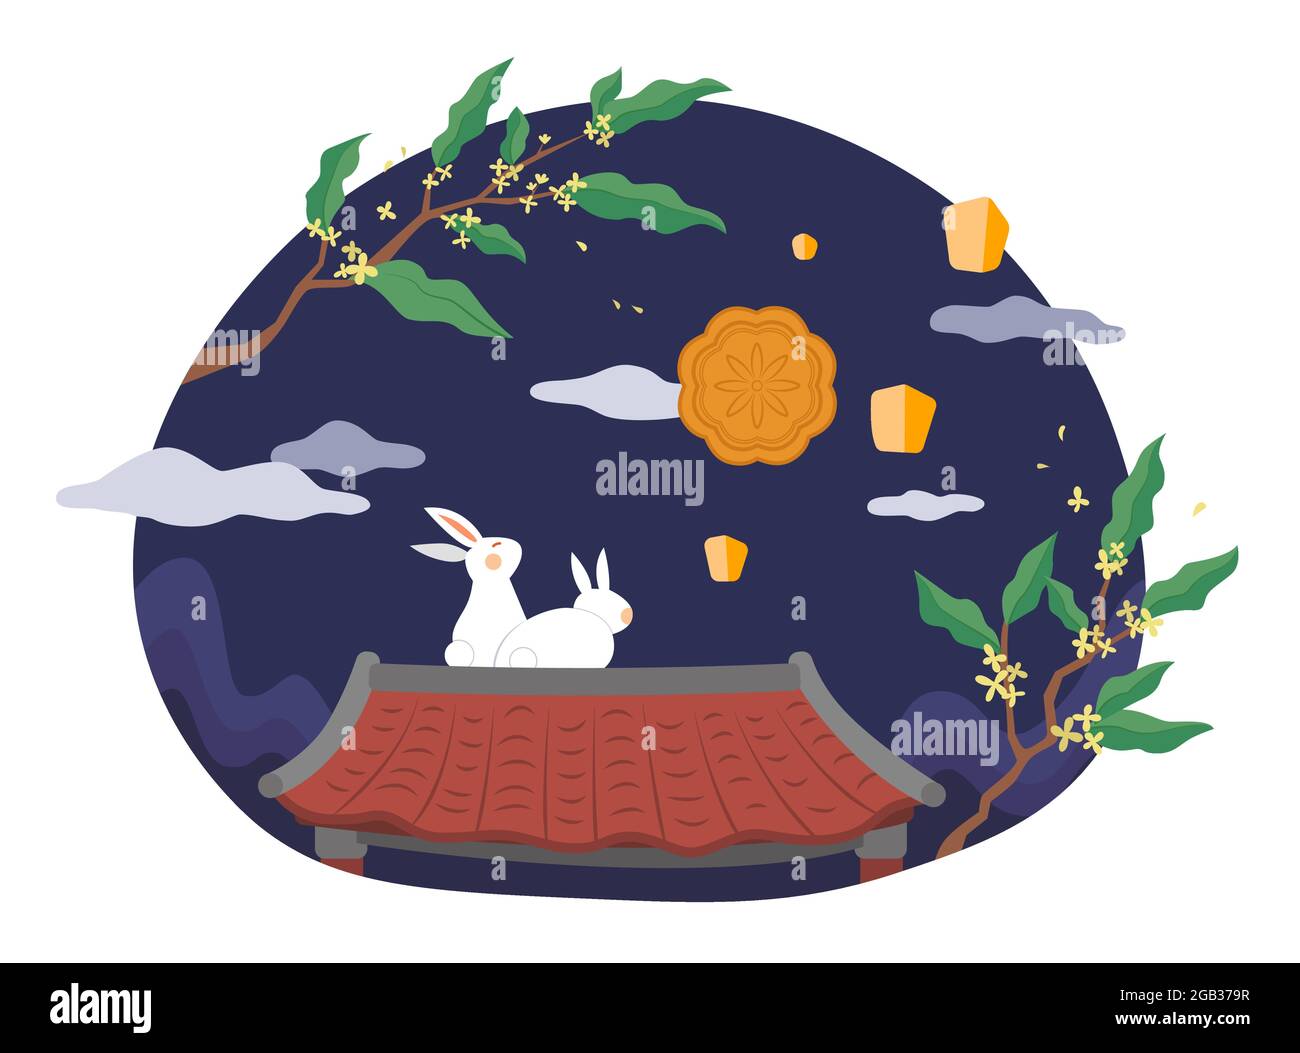 Design des Herbstfestes. Flache Illustration von Mondkaninchen, die auf dem chinesischen Ziegeldach sitzen und nachts Mond- und Himmelslaternen beobachten Stock Vektor